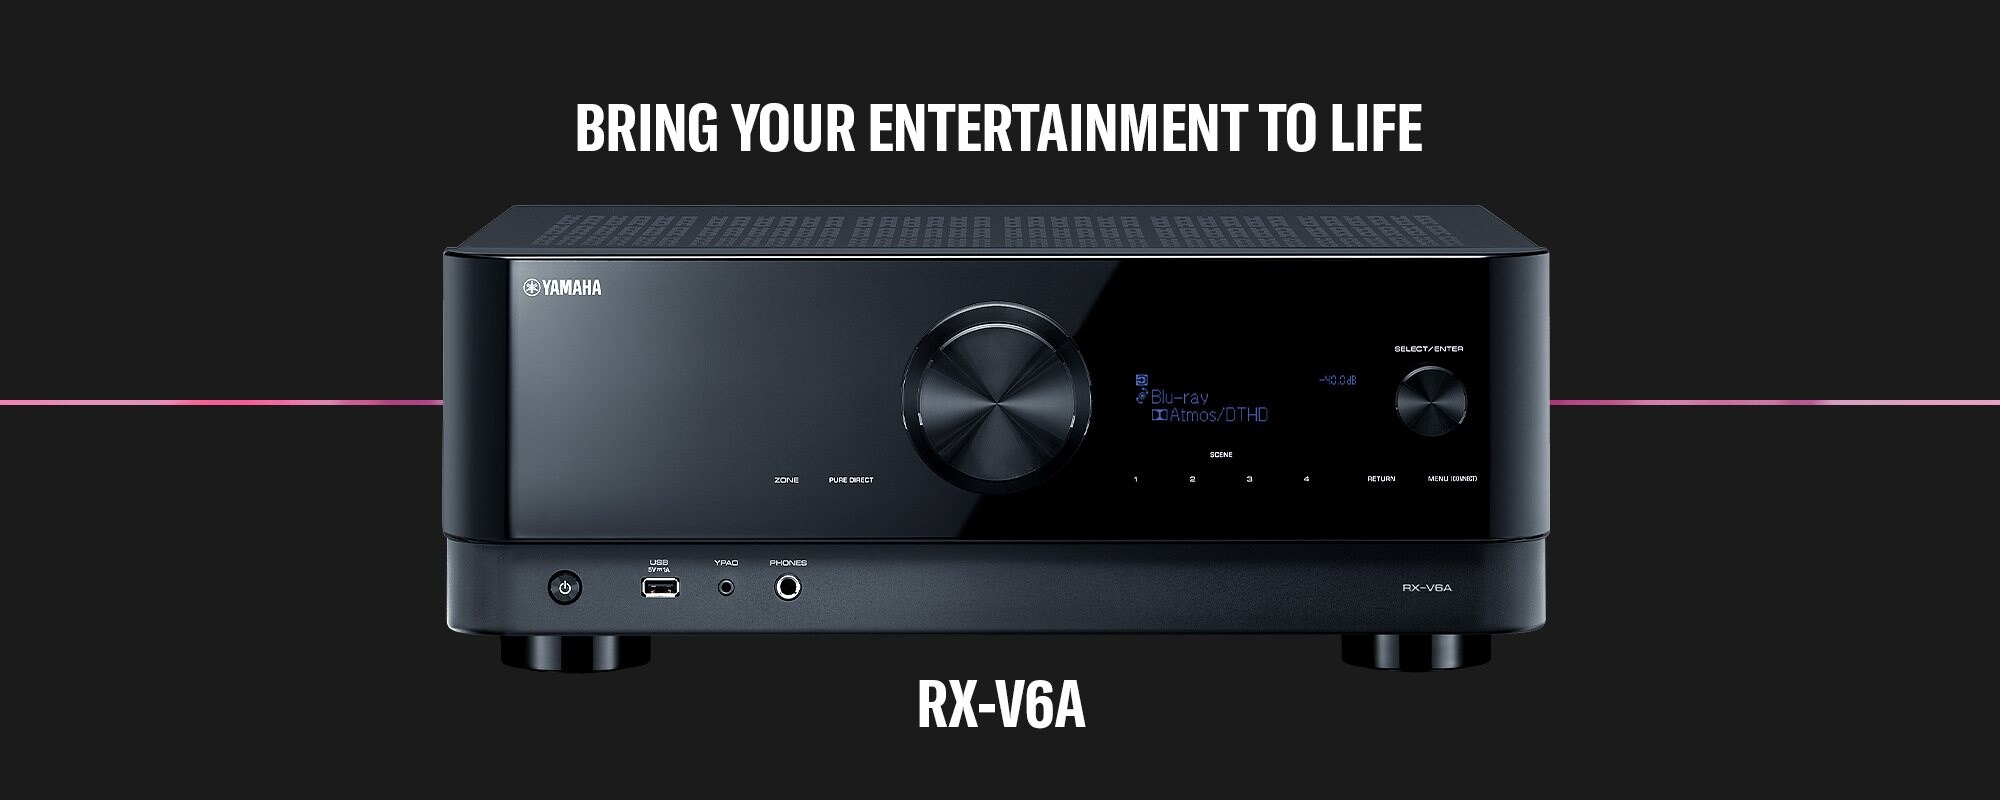 RX-V6A 7.2 Yamaha USA 8K 4K Dolby channel – Receiver AV 